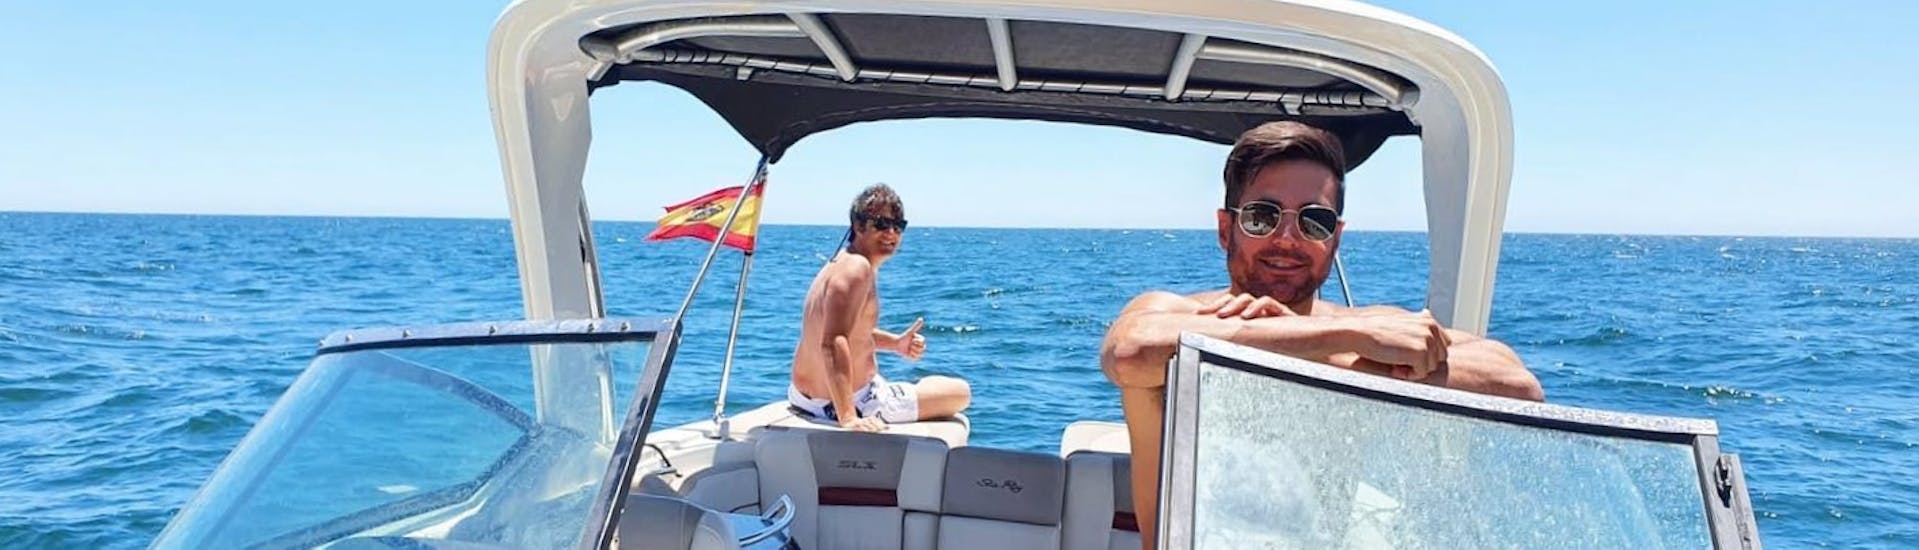 Deux amis sourient en naviguant sur un bateau de luxe lors d'une location de bateau à Marbella avec Marbella Renting Boat.